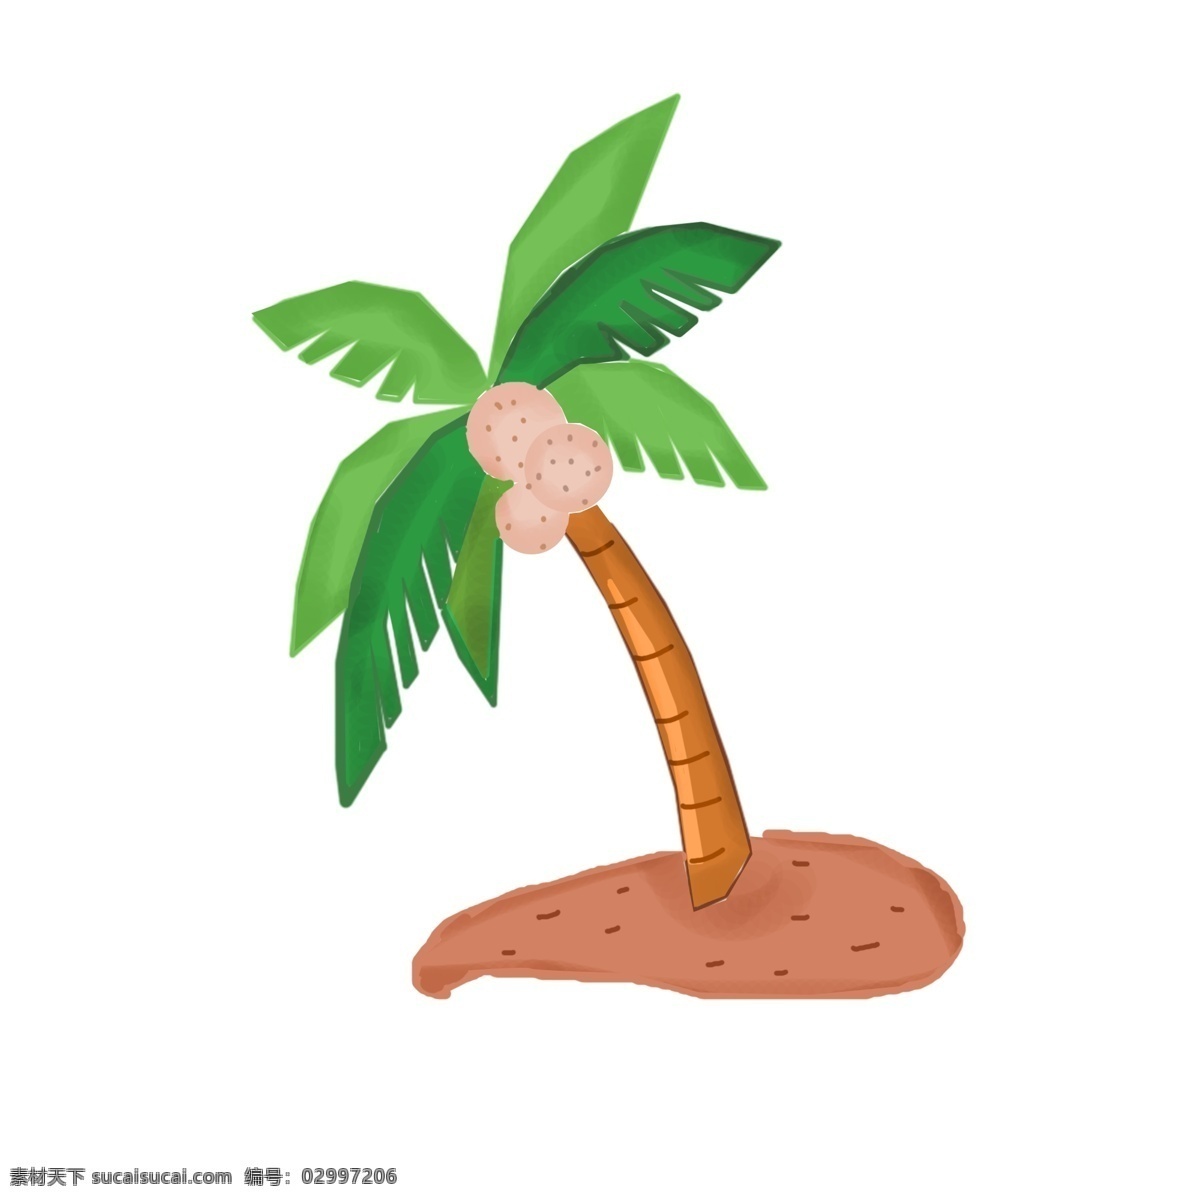 手绘 株 椰子树 插画 叶子 土壤 绿叶 植物 海南 椰果 椰蓉 海南水果 手绘椰子树 椰子树插画